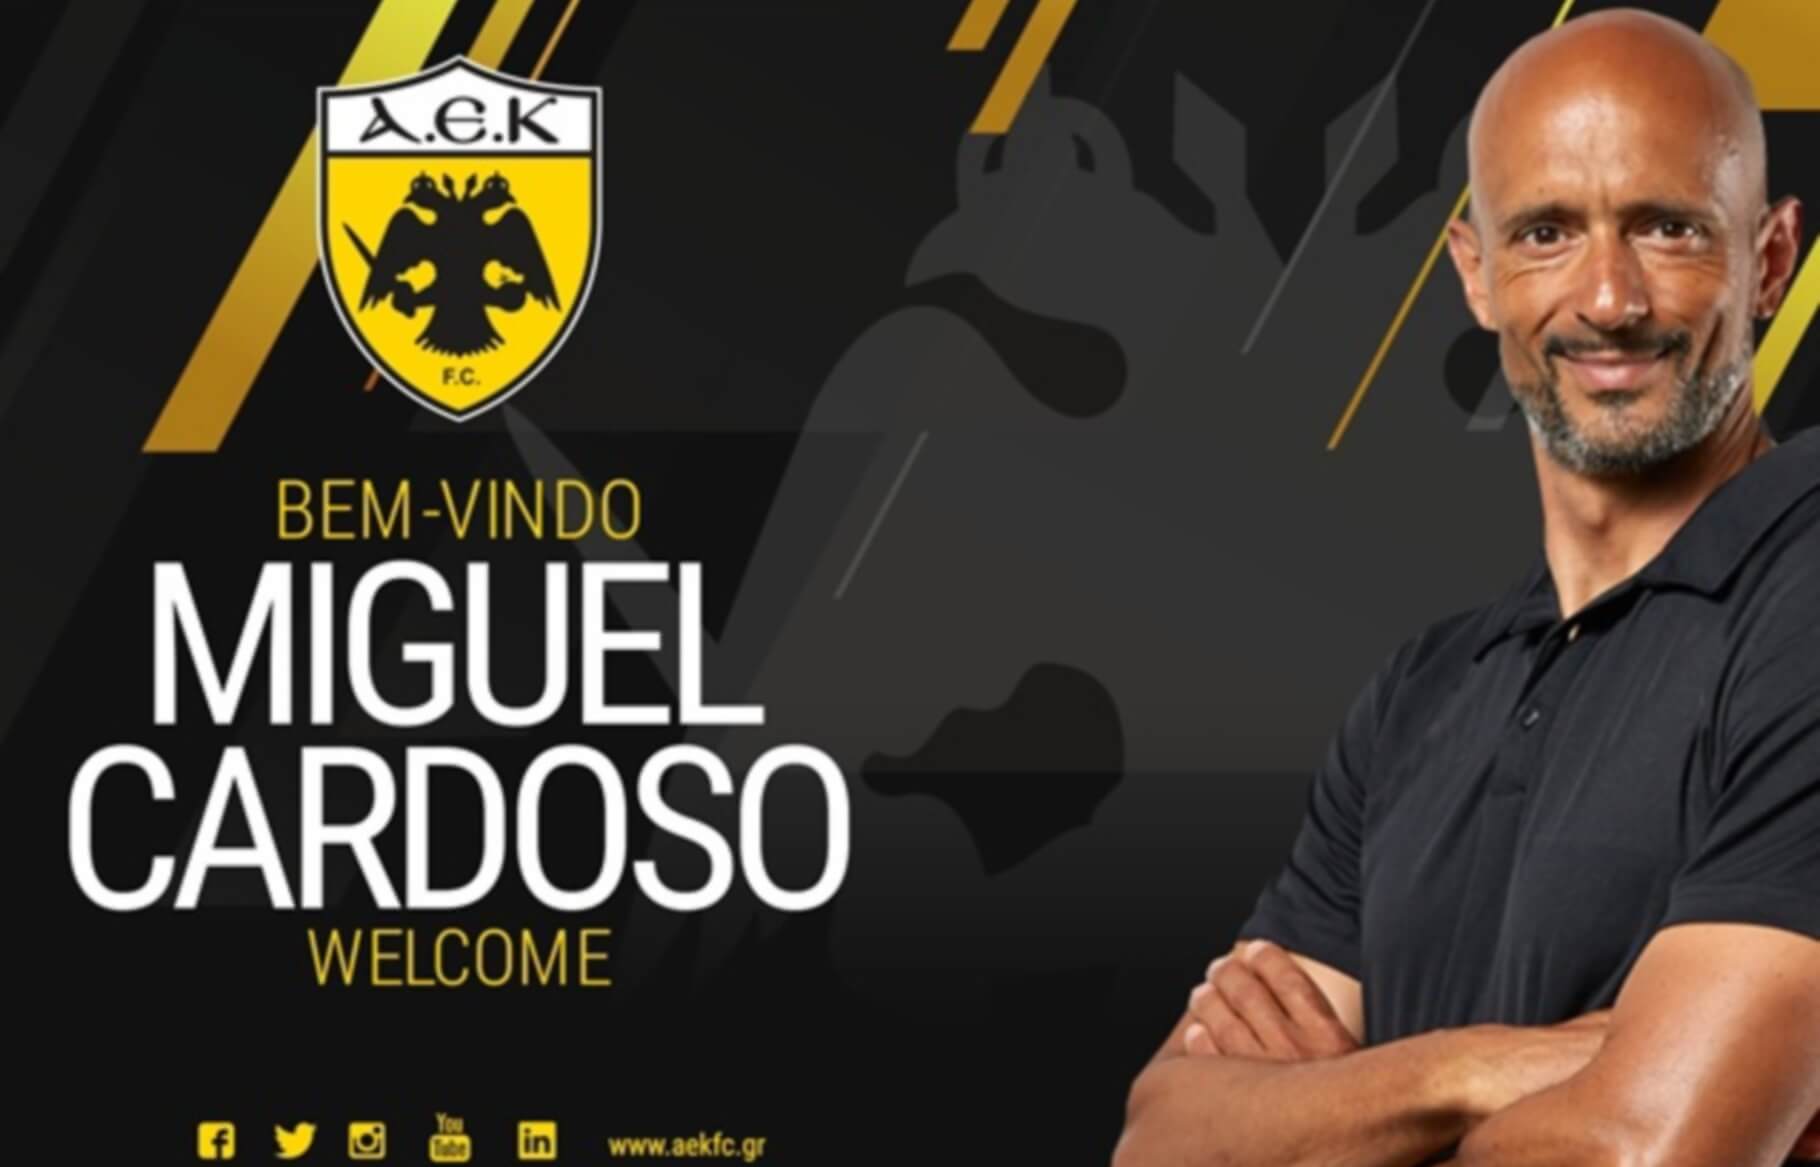 ΑΕΚ – Καρντόσο: Το πρώτο “κιτρινόμαυρο” μήνυμα του νέου προπονητή!